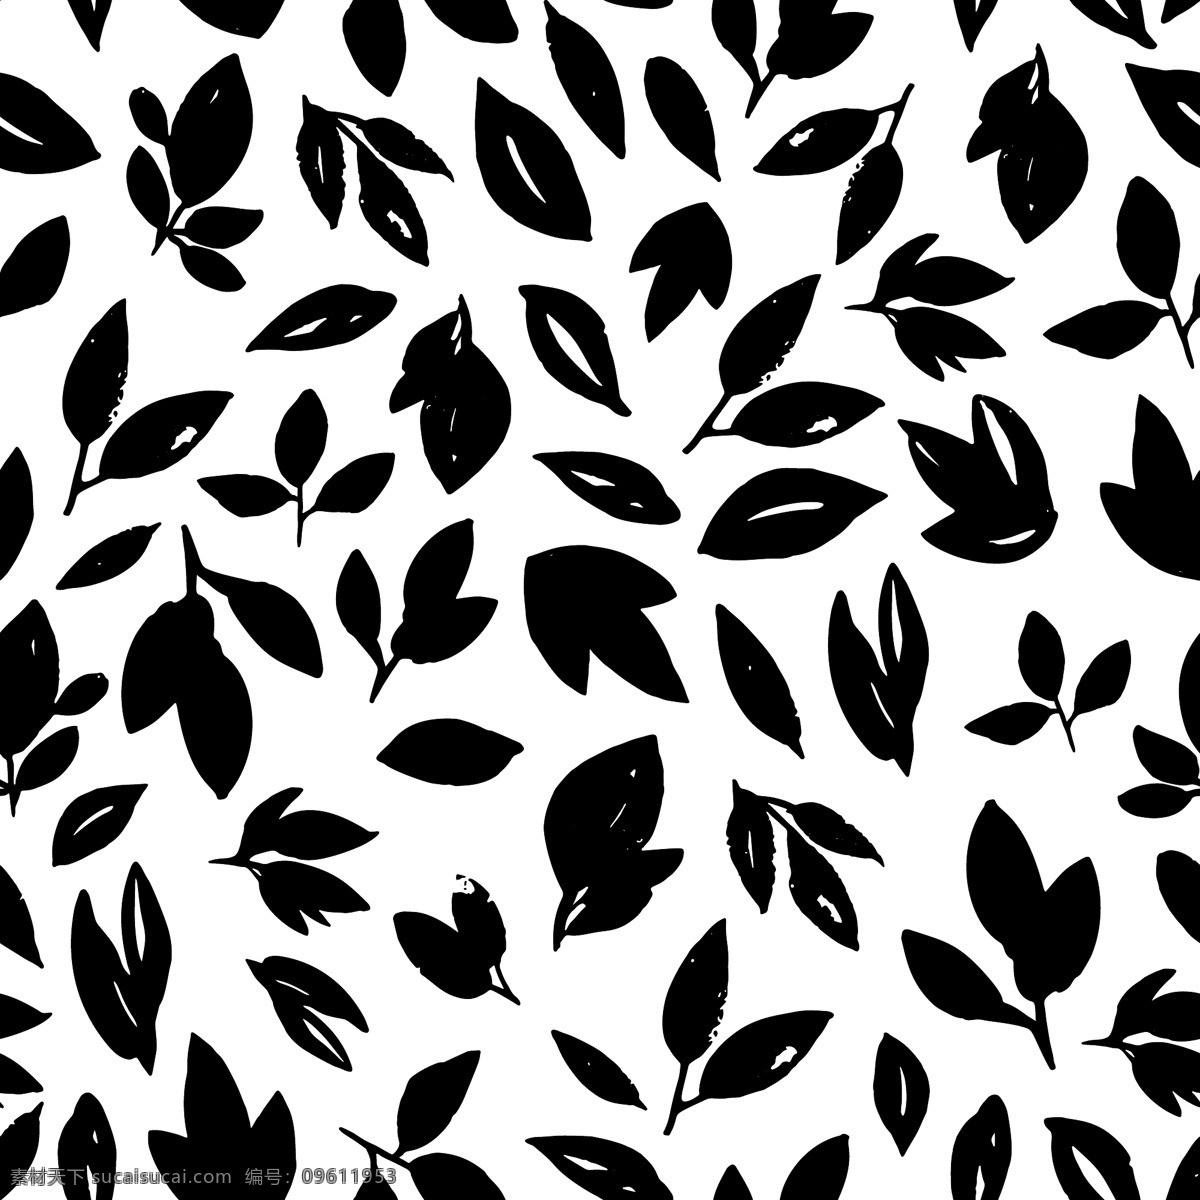 简单 黑白 树叶 背景 矢量 黑色 平面素材 设计素材 矢量素材 叶片 叶子 植物